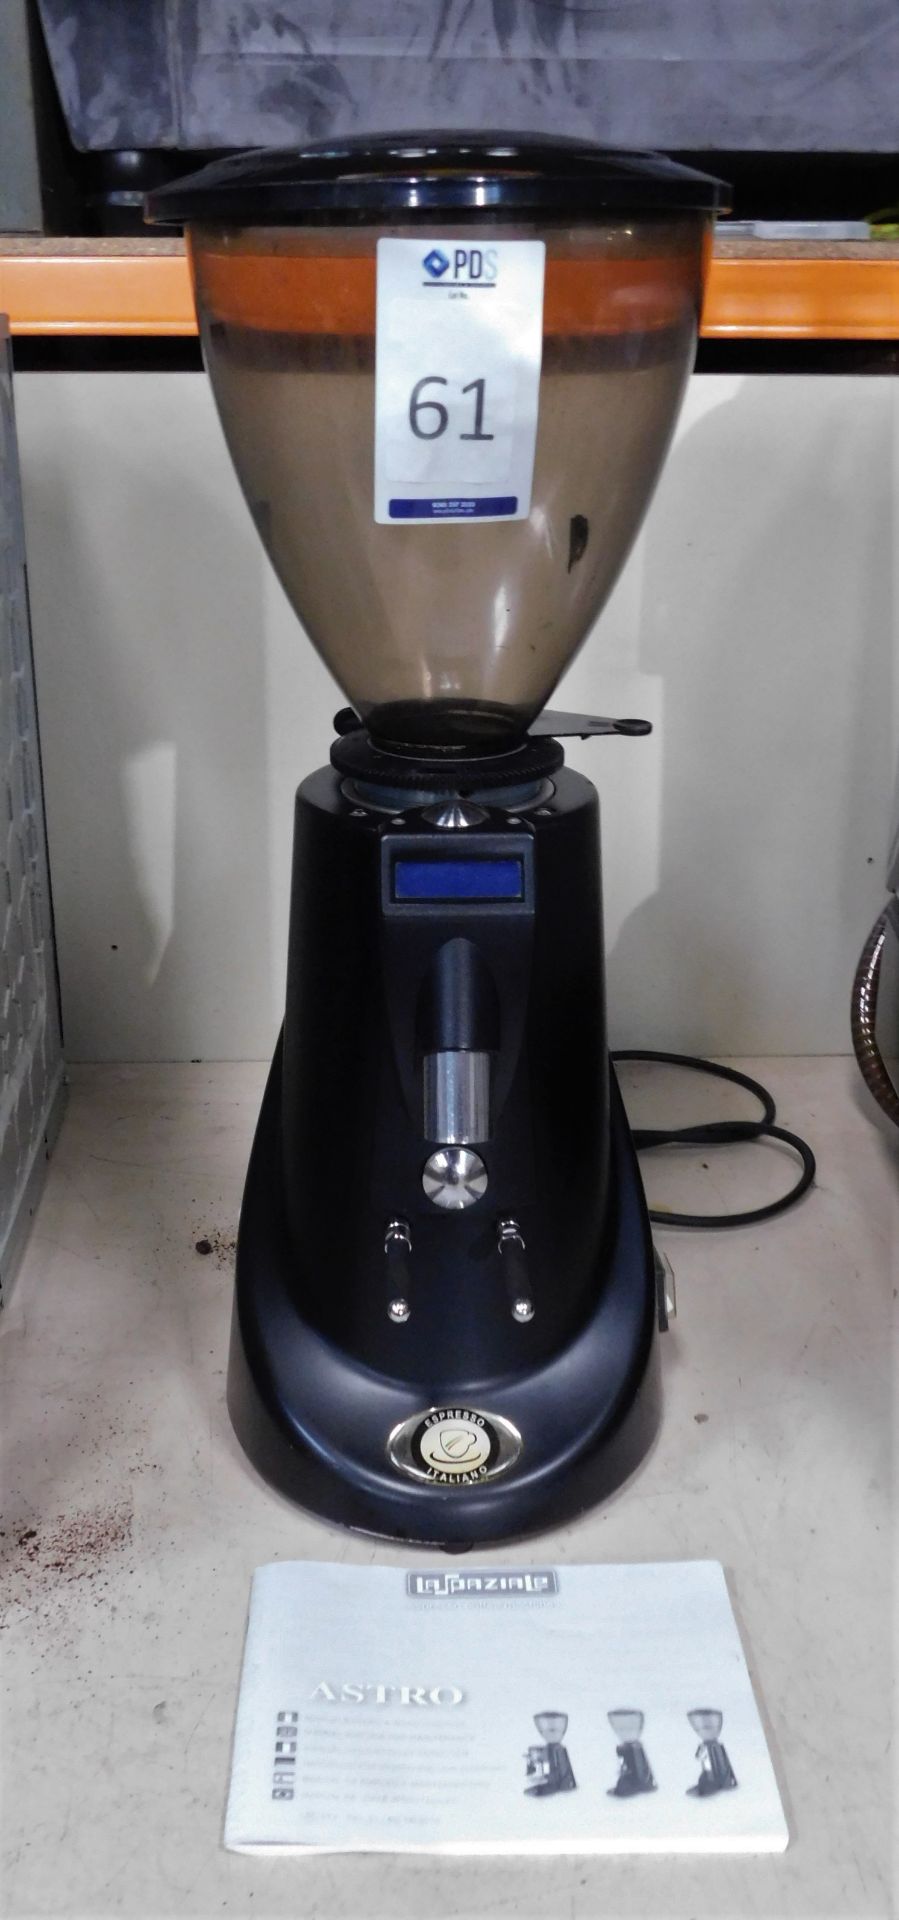 La Spaziale Astro 12 Espresso Coffee Grinder, Serial Number 1605L1288